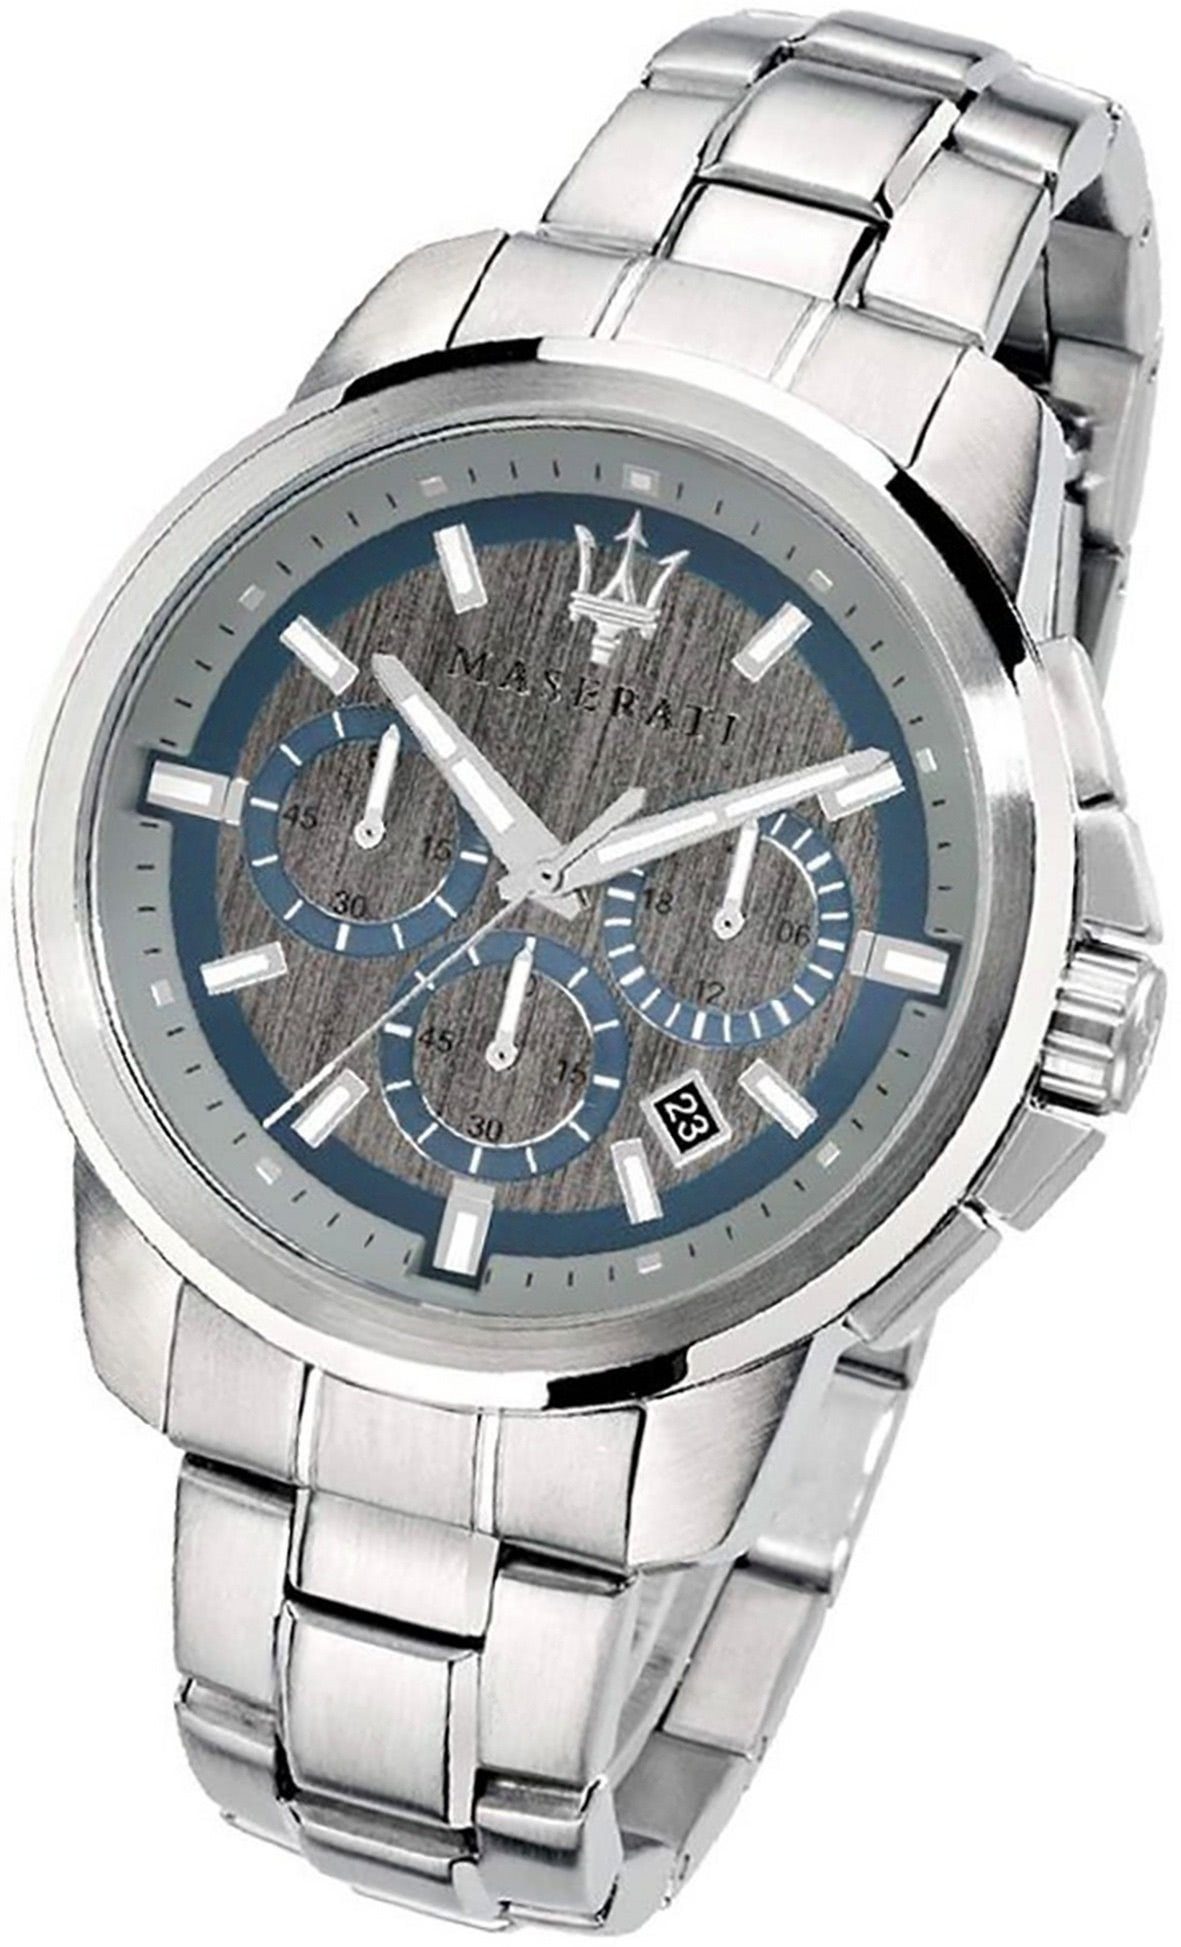 MASERATI Chronograph Maserati Edelstahl Armband-Uhr, Herrenuhr Edelstahlarmband, rundes Gehäuse, groß (ca. 52x44mm) silber